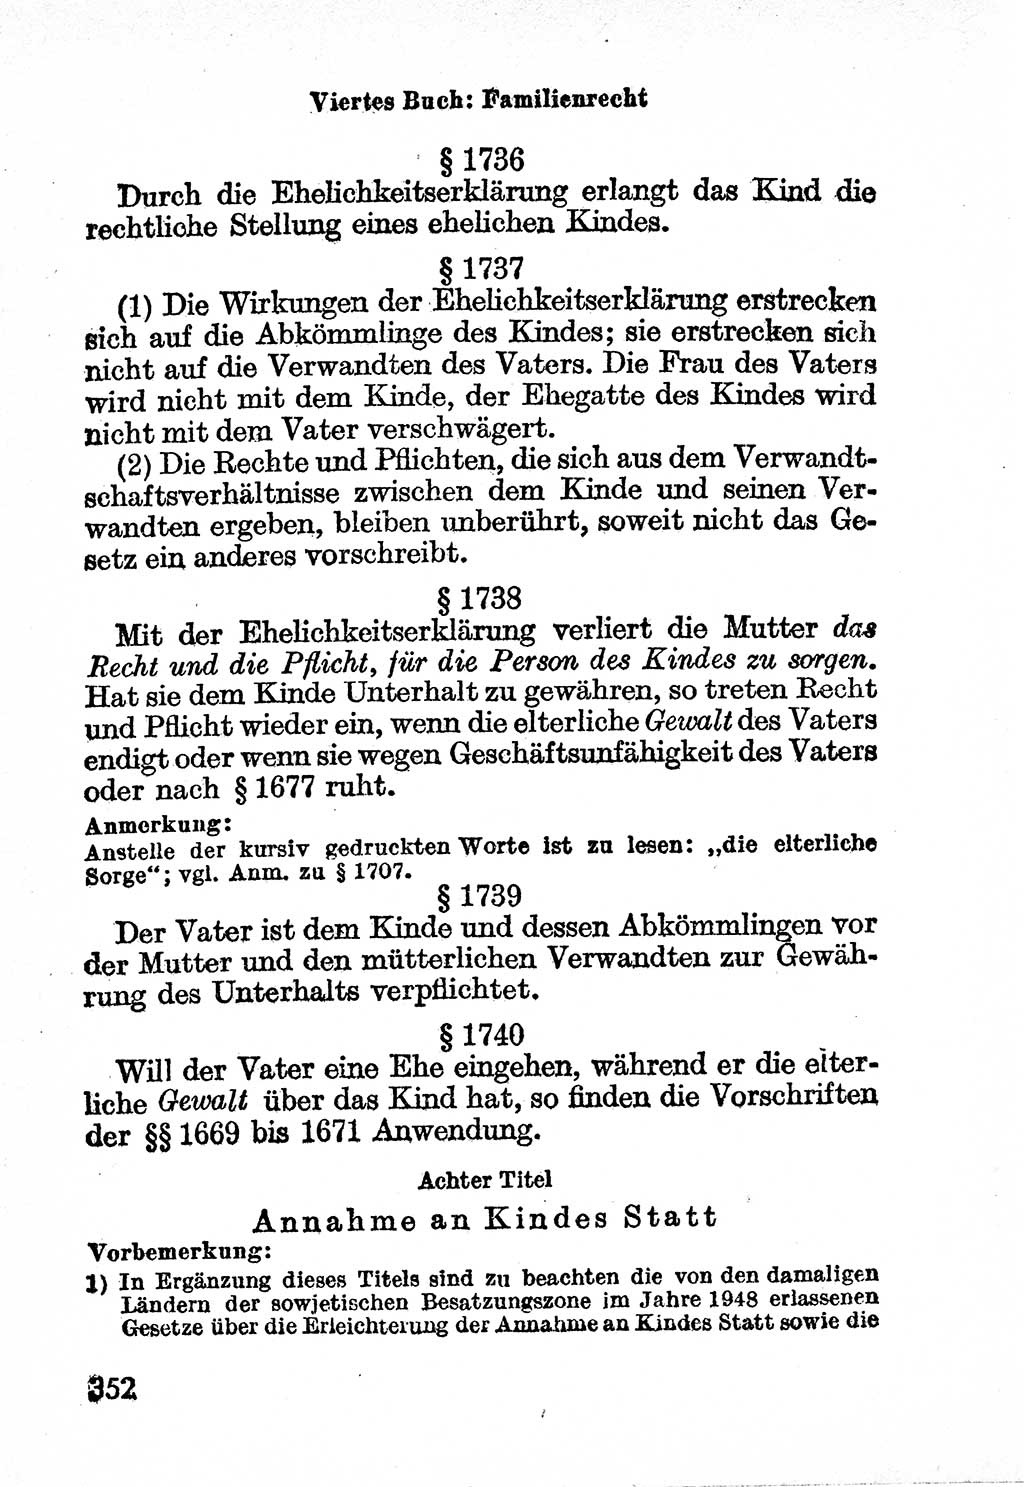 Bürgerliches Gesetzbuch (BGB) nebst wichtigen Nebengesetzen [Deutsche Demokratische Republik (DDR)] 1956, Seite 352 (BGB Nebenges. DDR 1956, S. 352)